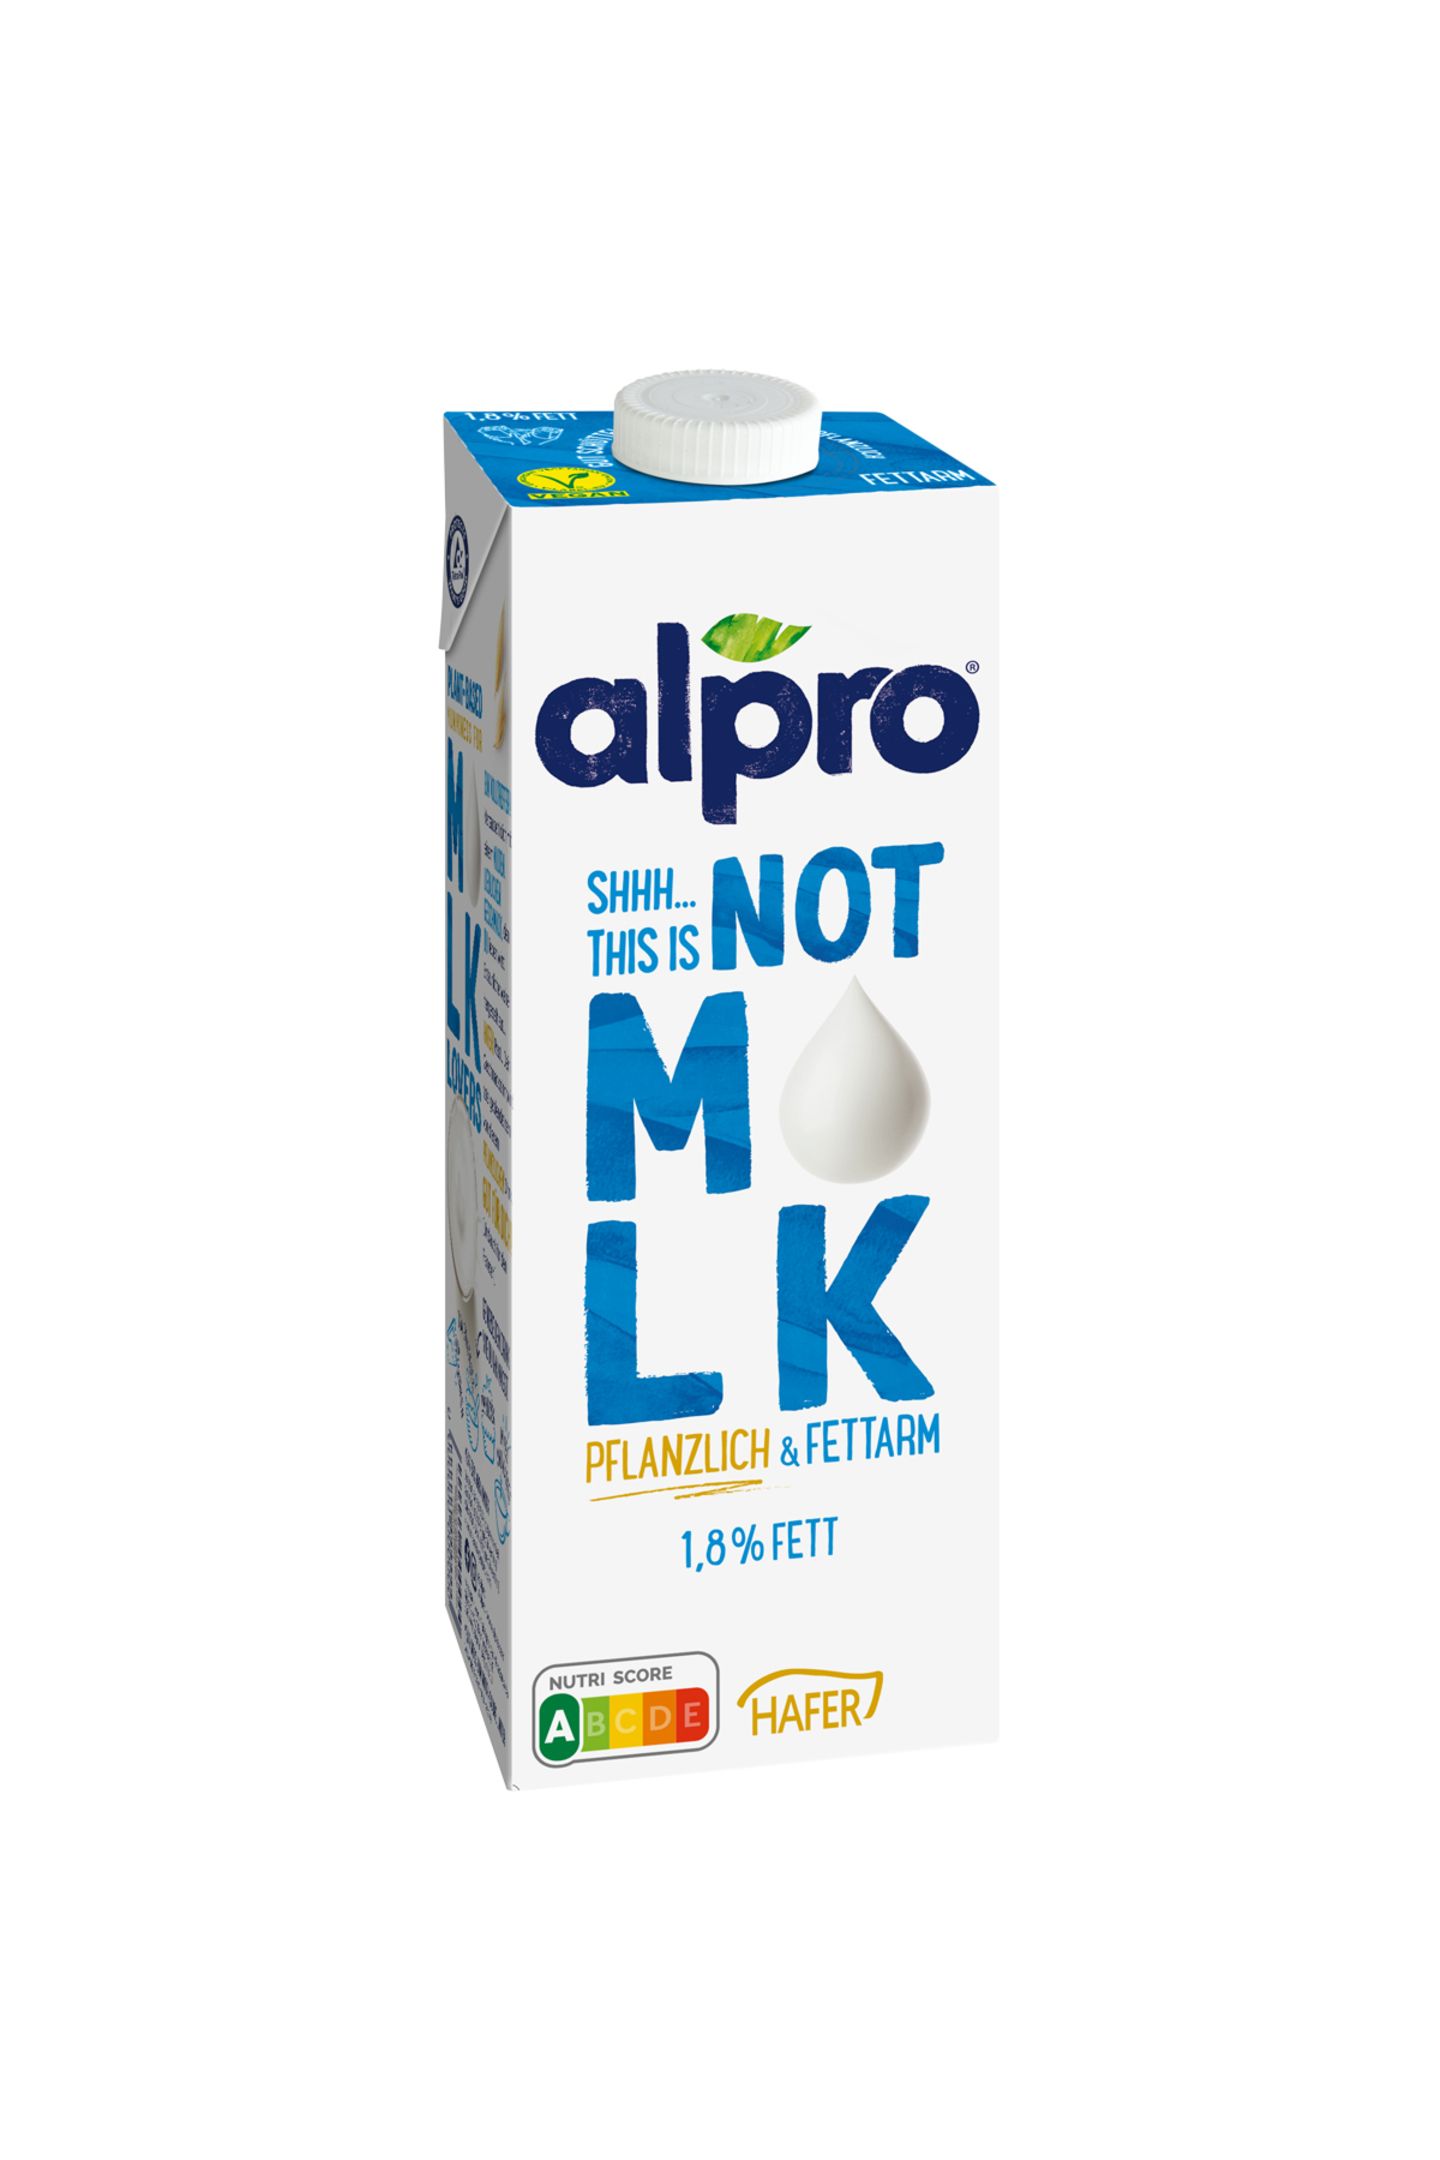 Psssst Augen zu und probieren, na wie schmeckt's? Vermutlich: Wie Milch. Ist aber keine. Alpro hat etwas produziert, was viele Milch-Trinker zum Wechsel überzeugen könnte: Eine pflanzliche Milch, die nicht nach Pflanzen schmeckt, sondern nach Kuh-Milch. "Not Milk" von Alpro, ca. 2 Euro pro Liter.